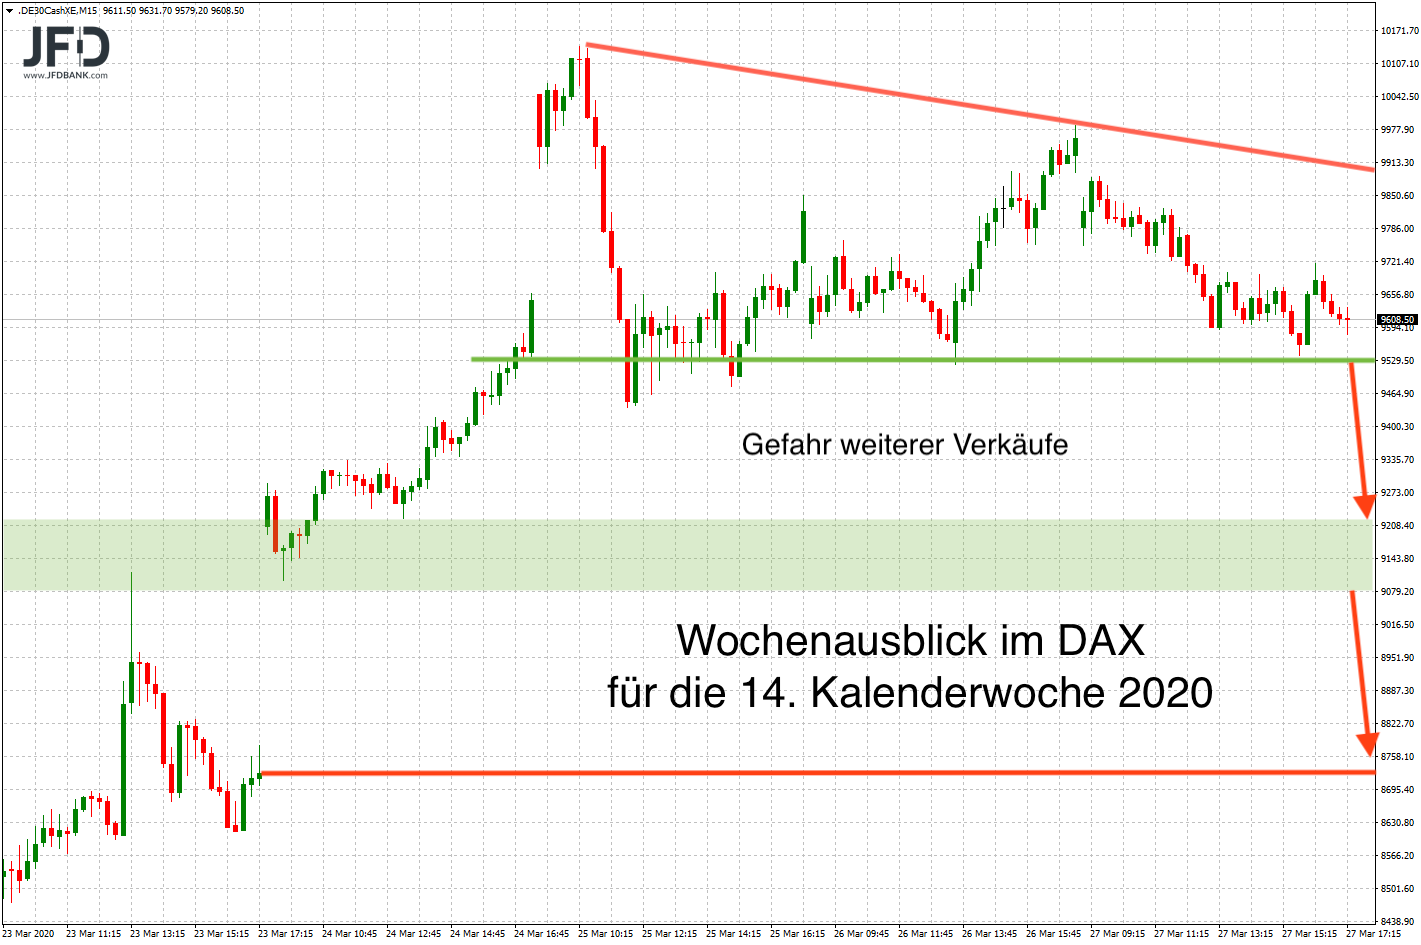 20200328_dax_xetra_wochenausblick.png